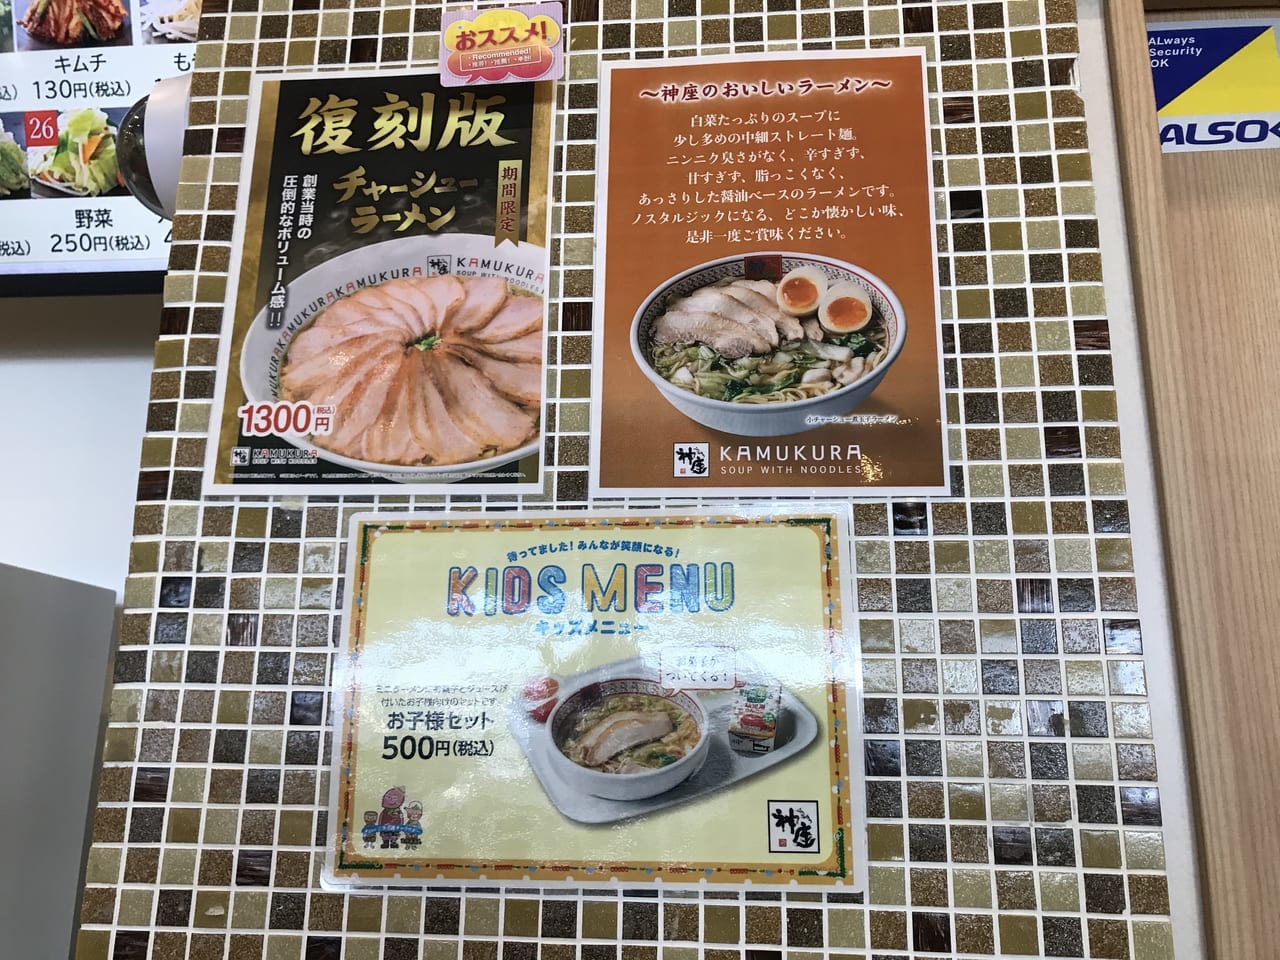 パサール三芳のラーメン店カムクラ